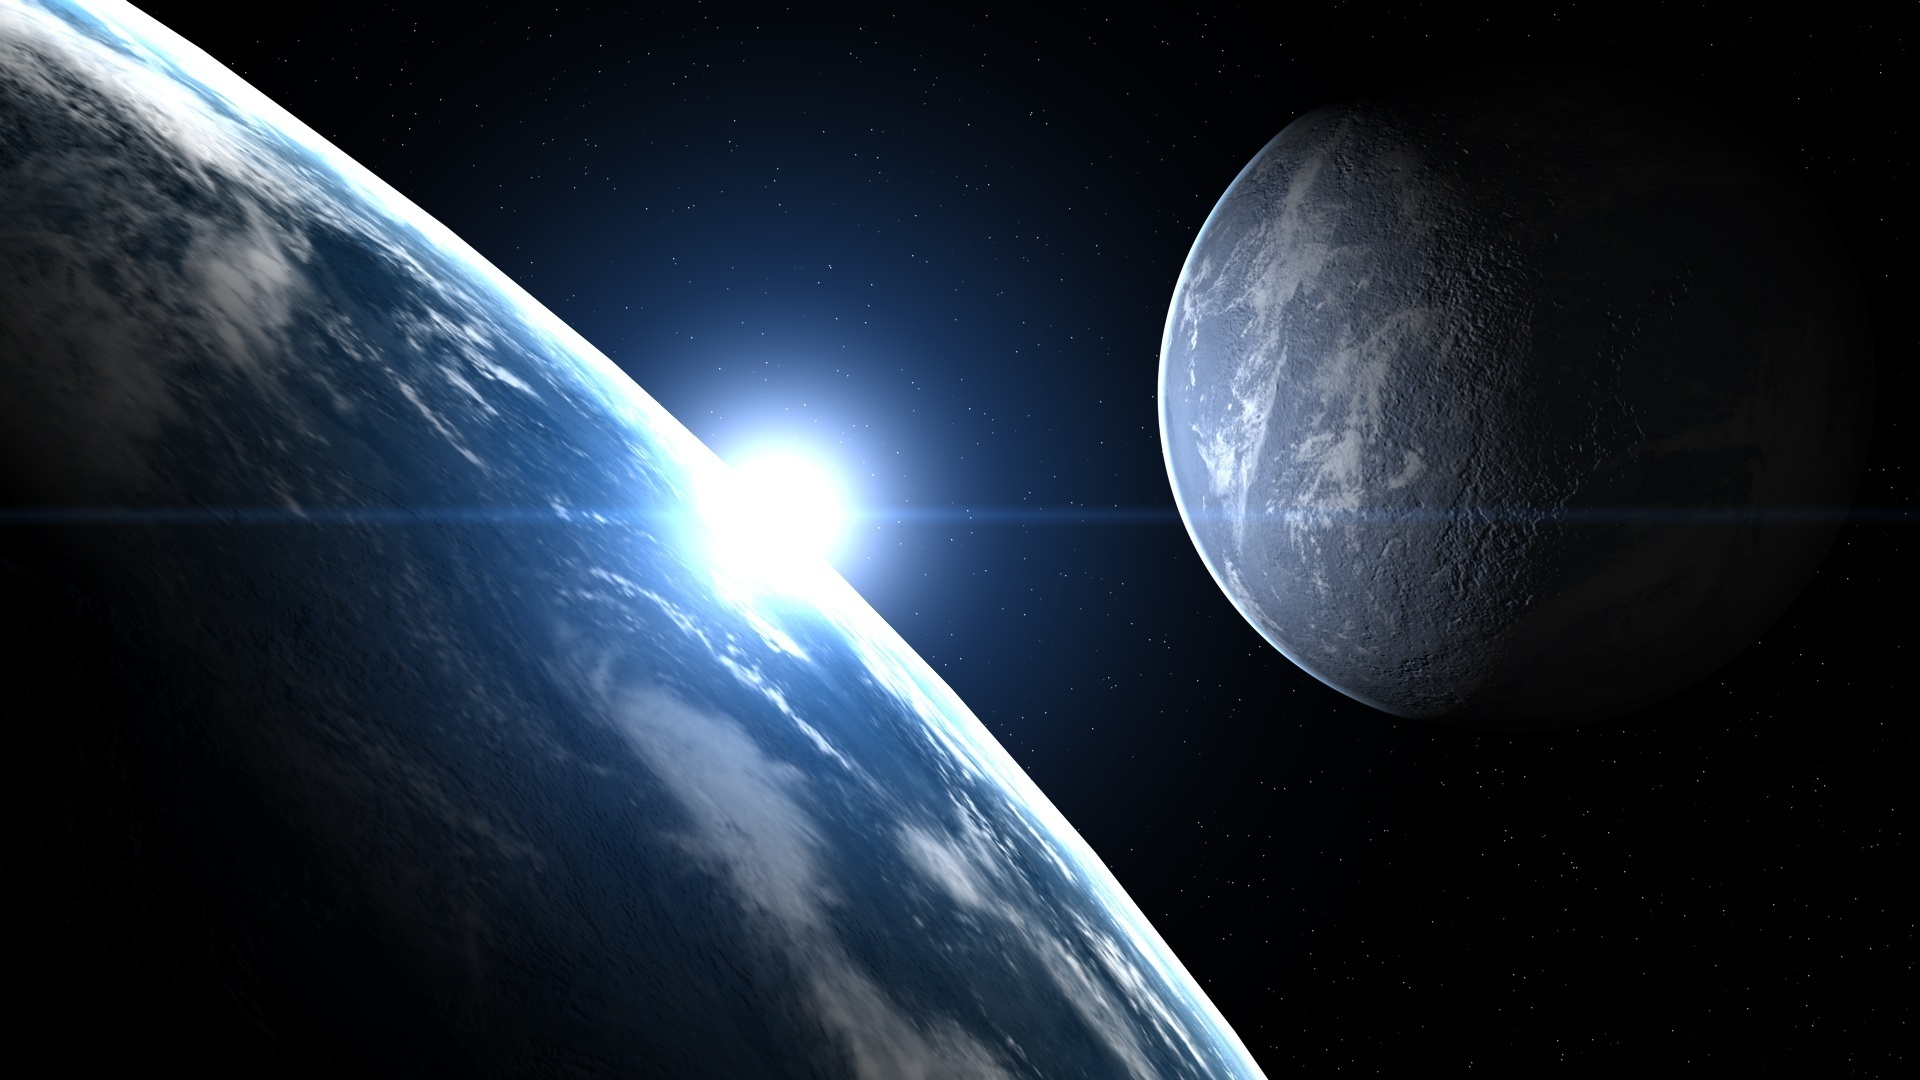 Обои Планета с кольцами звезды вид с земли спутники картинки на рабочий стол на тему Космос - скачать бесплатно